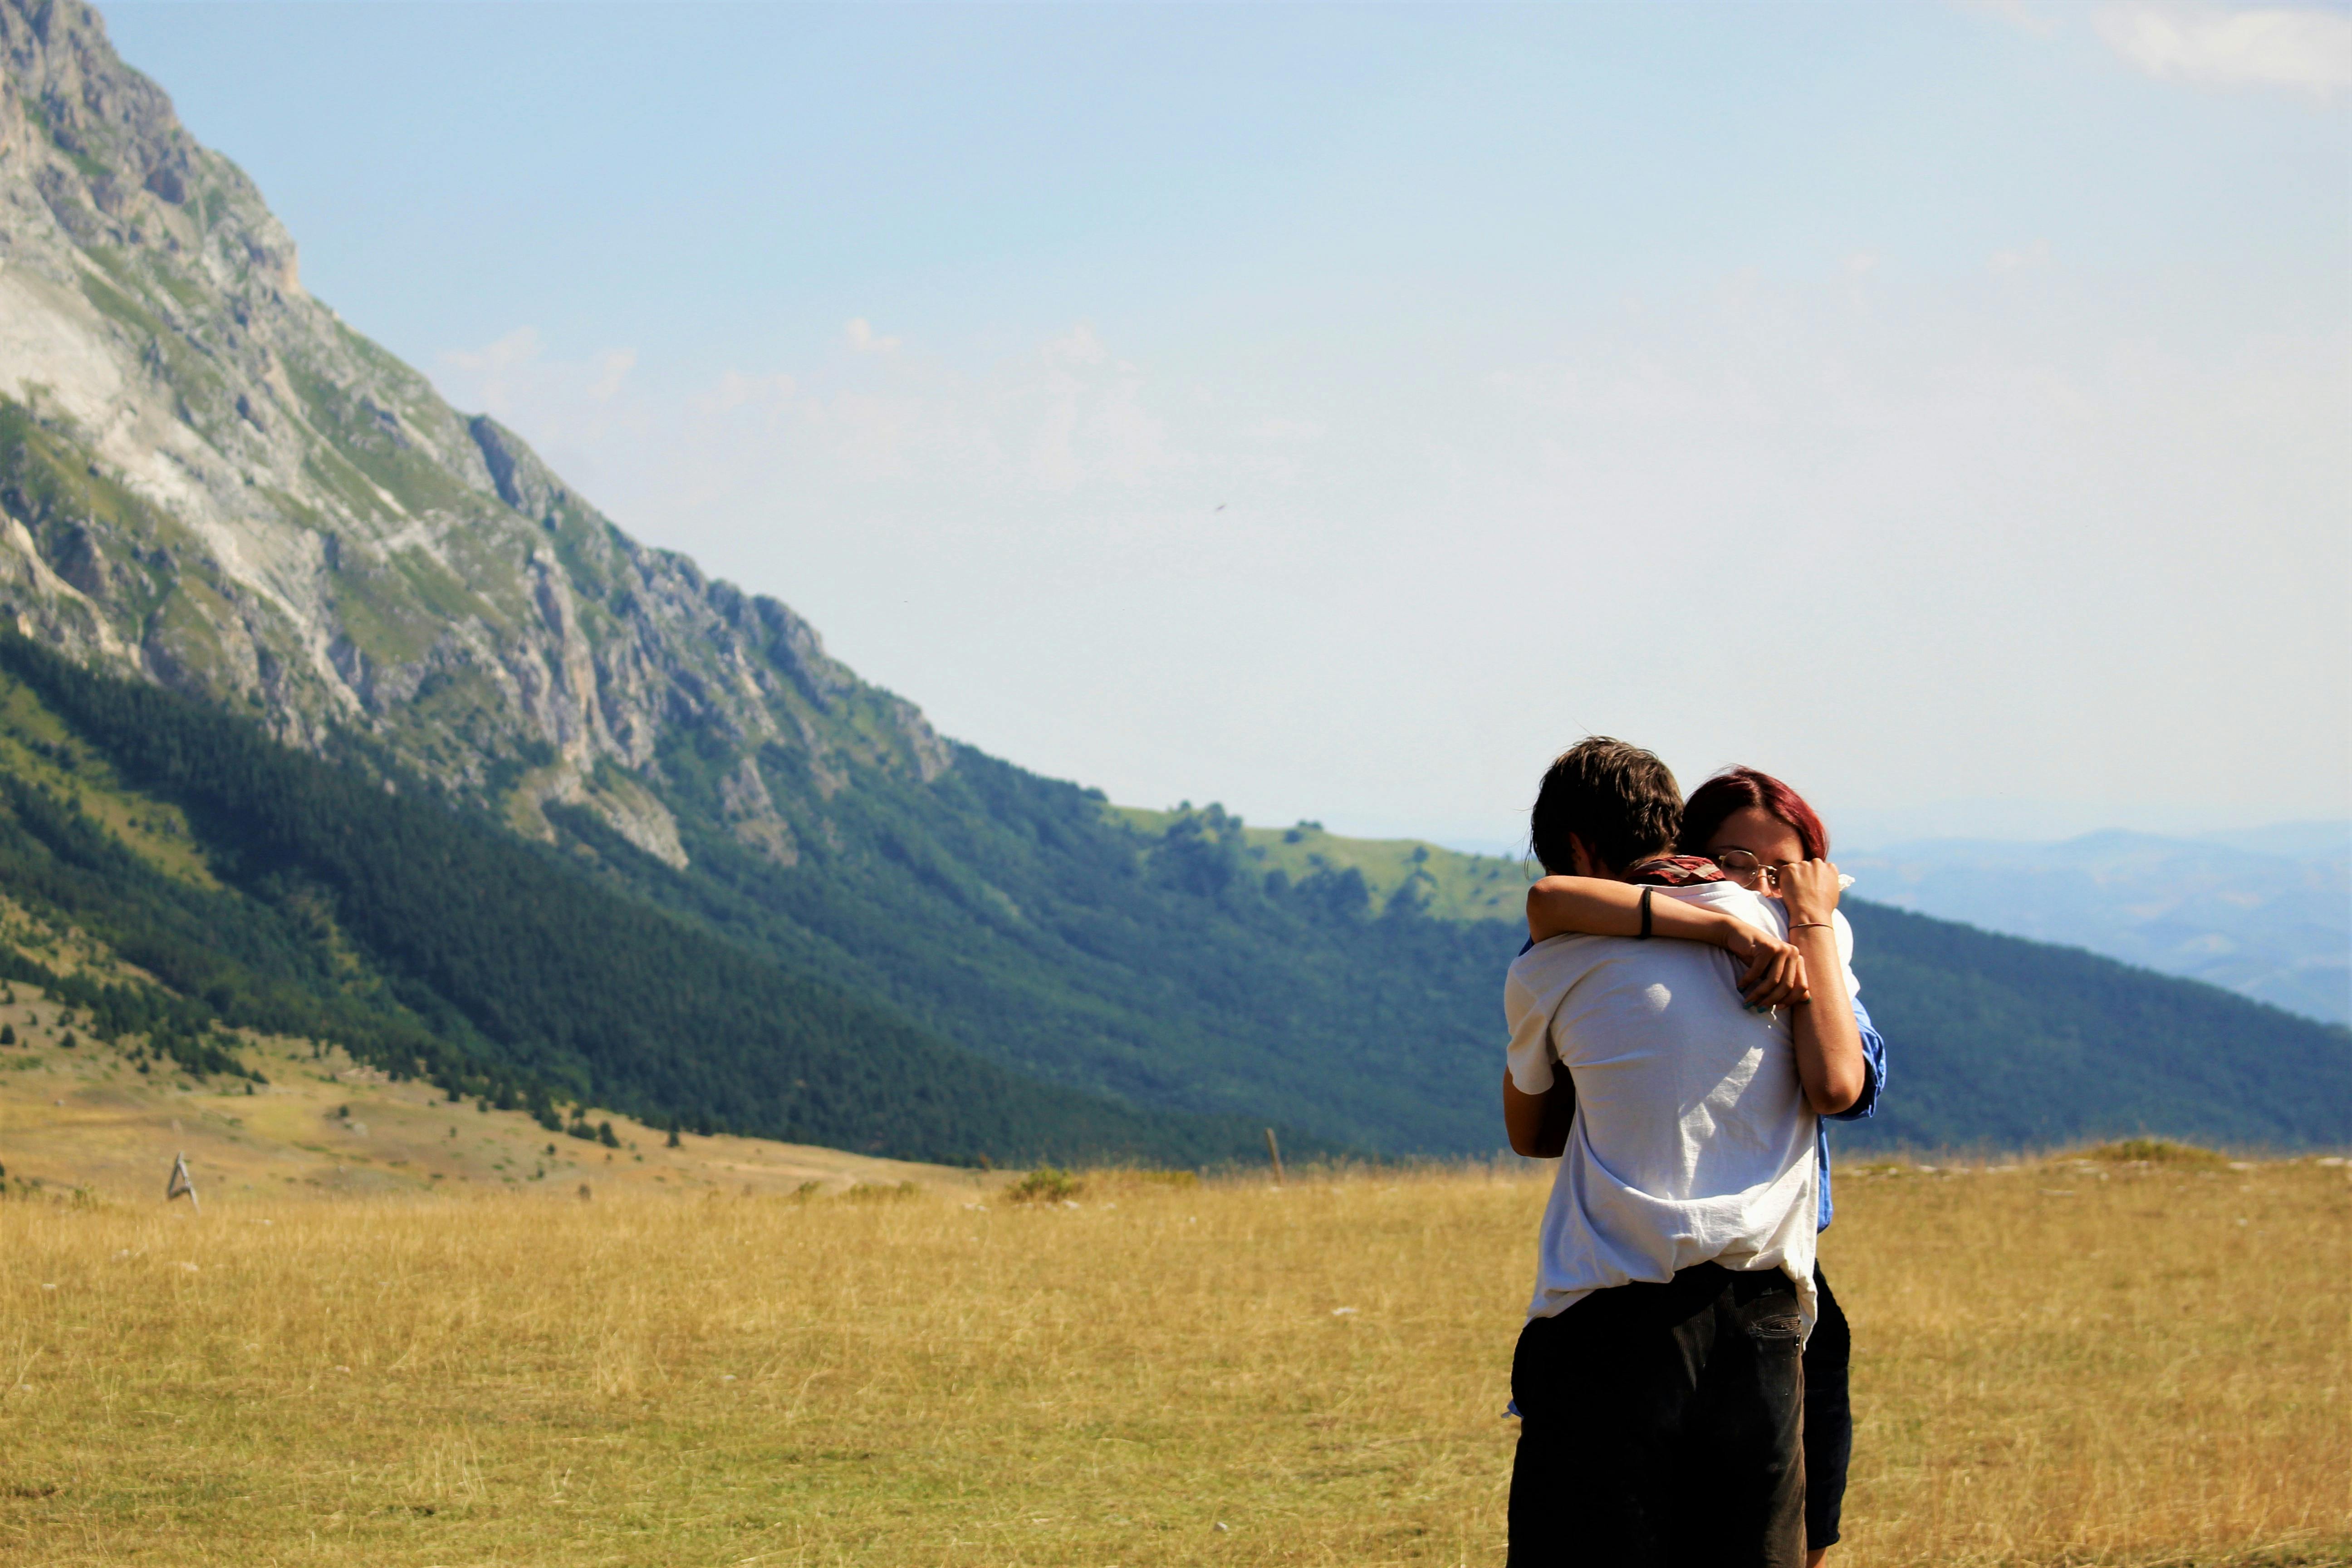 Ein sich umarmendes Paar auf einer Wiese | Quelle: Pexels